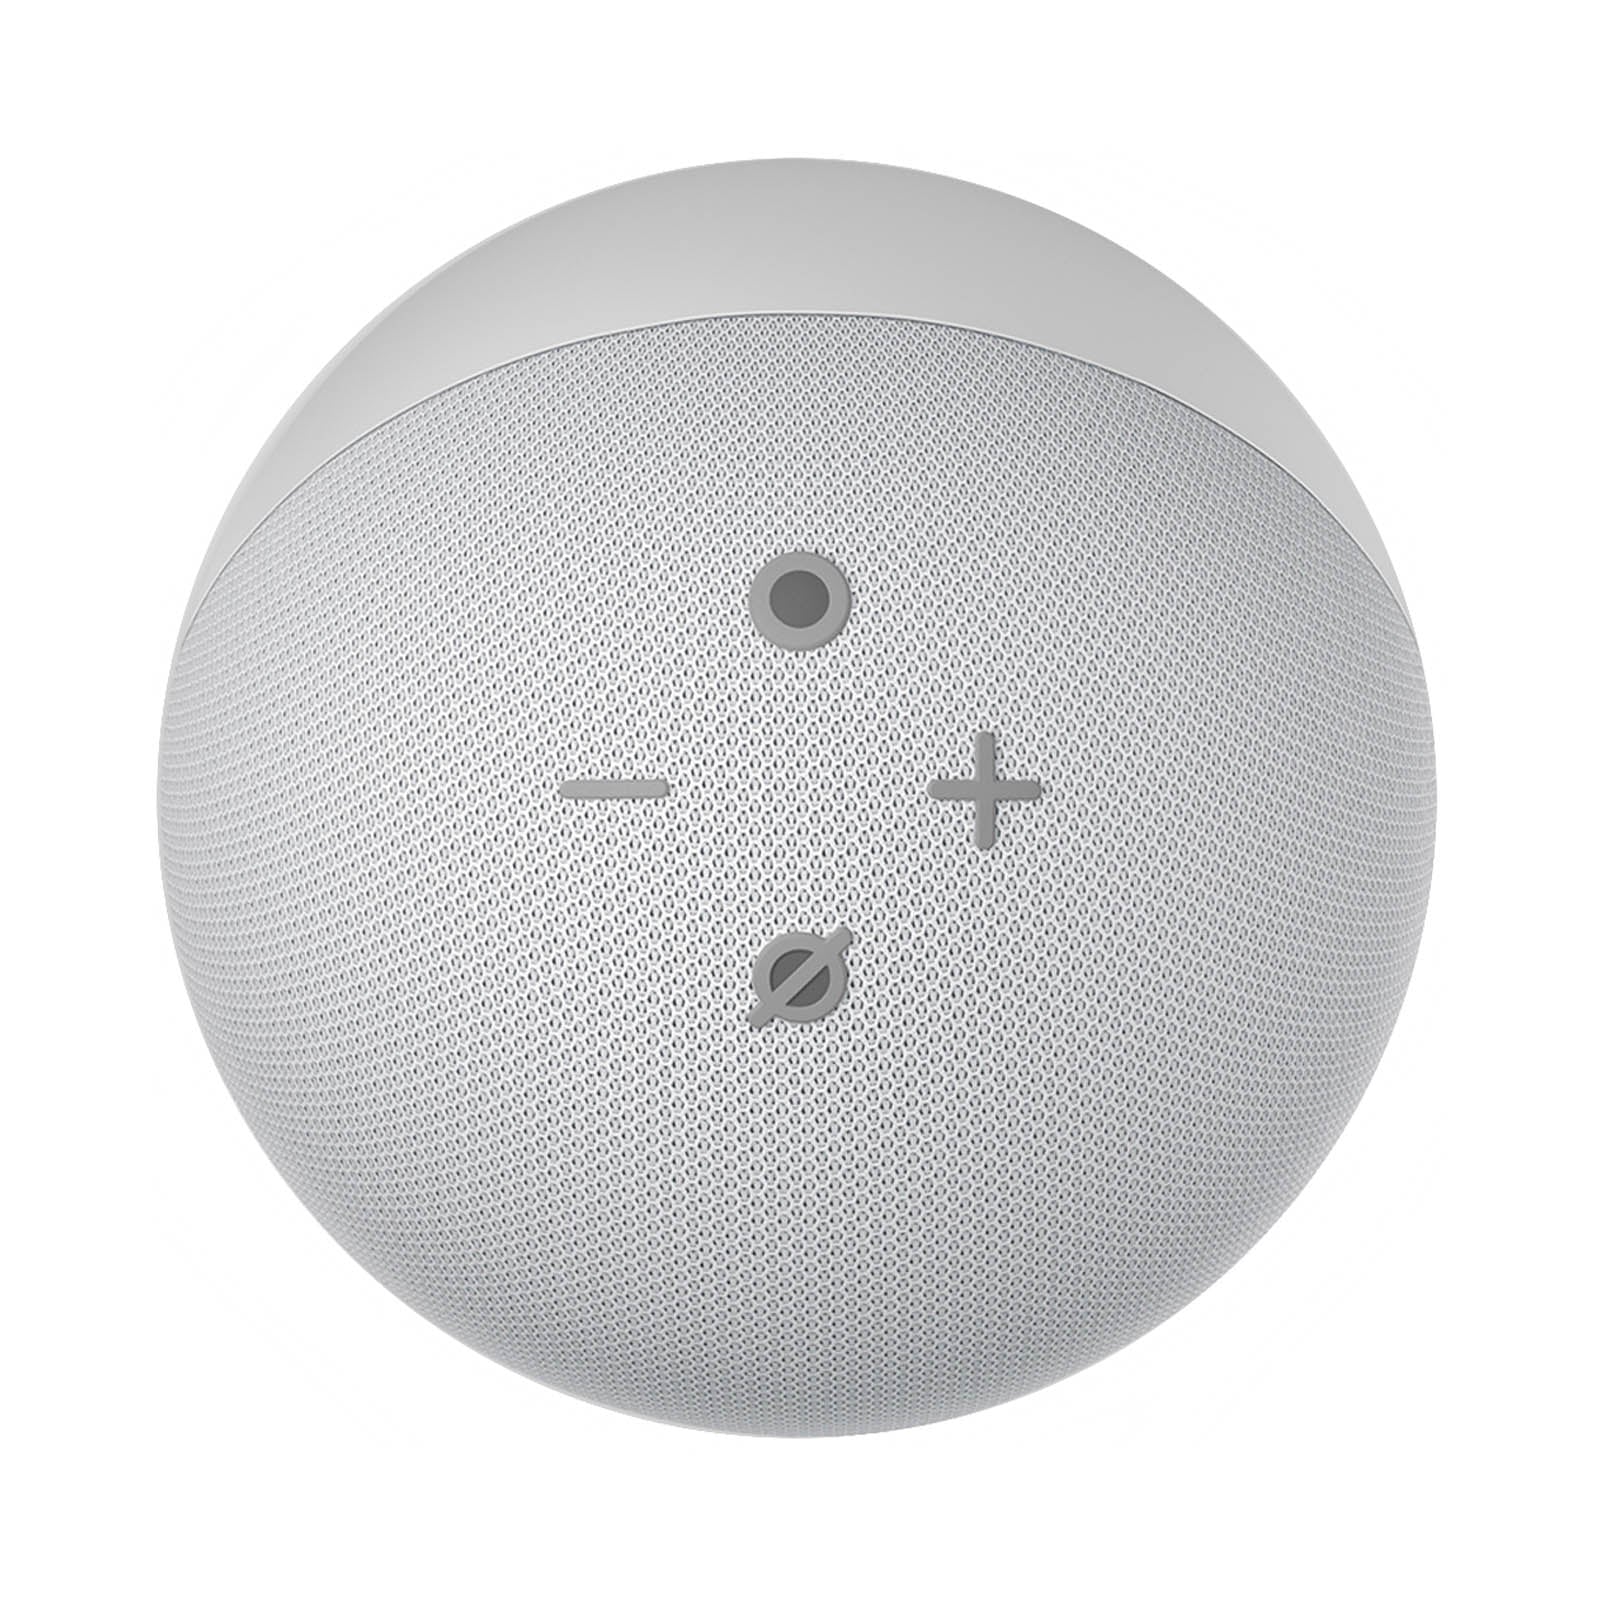 Altavoz inteligente Alexa Echo Dot de 5ta generación blanco de 15